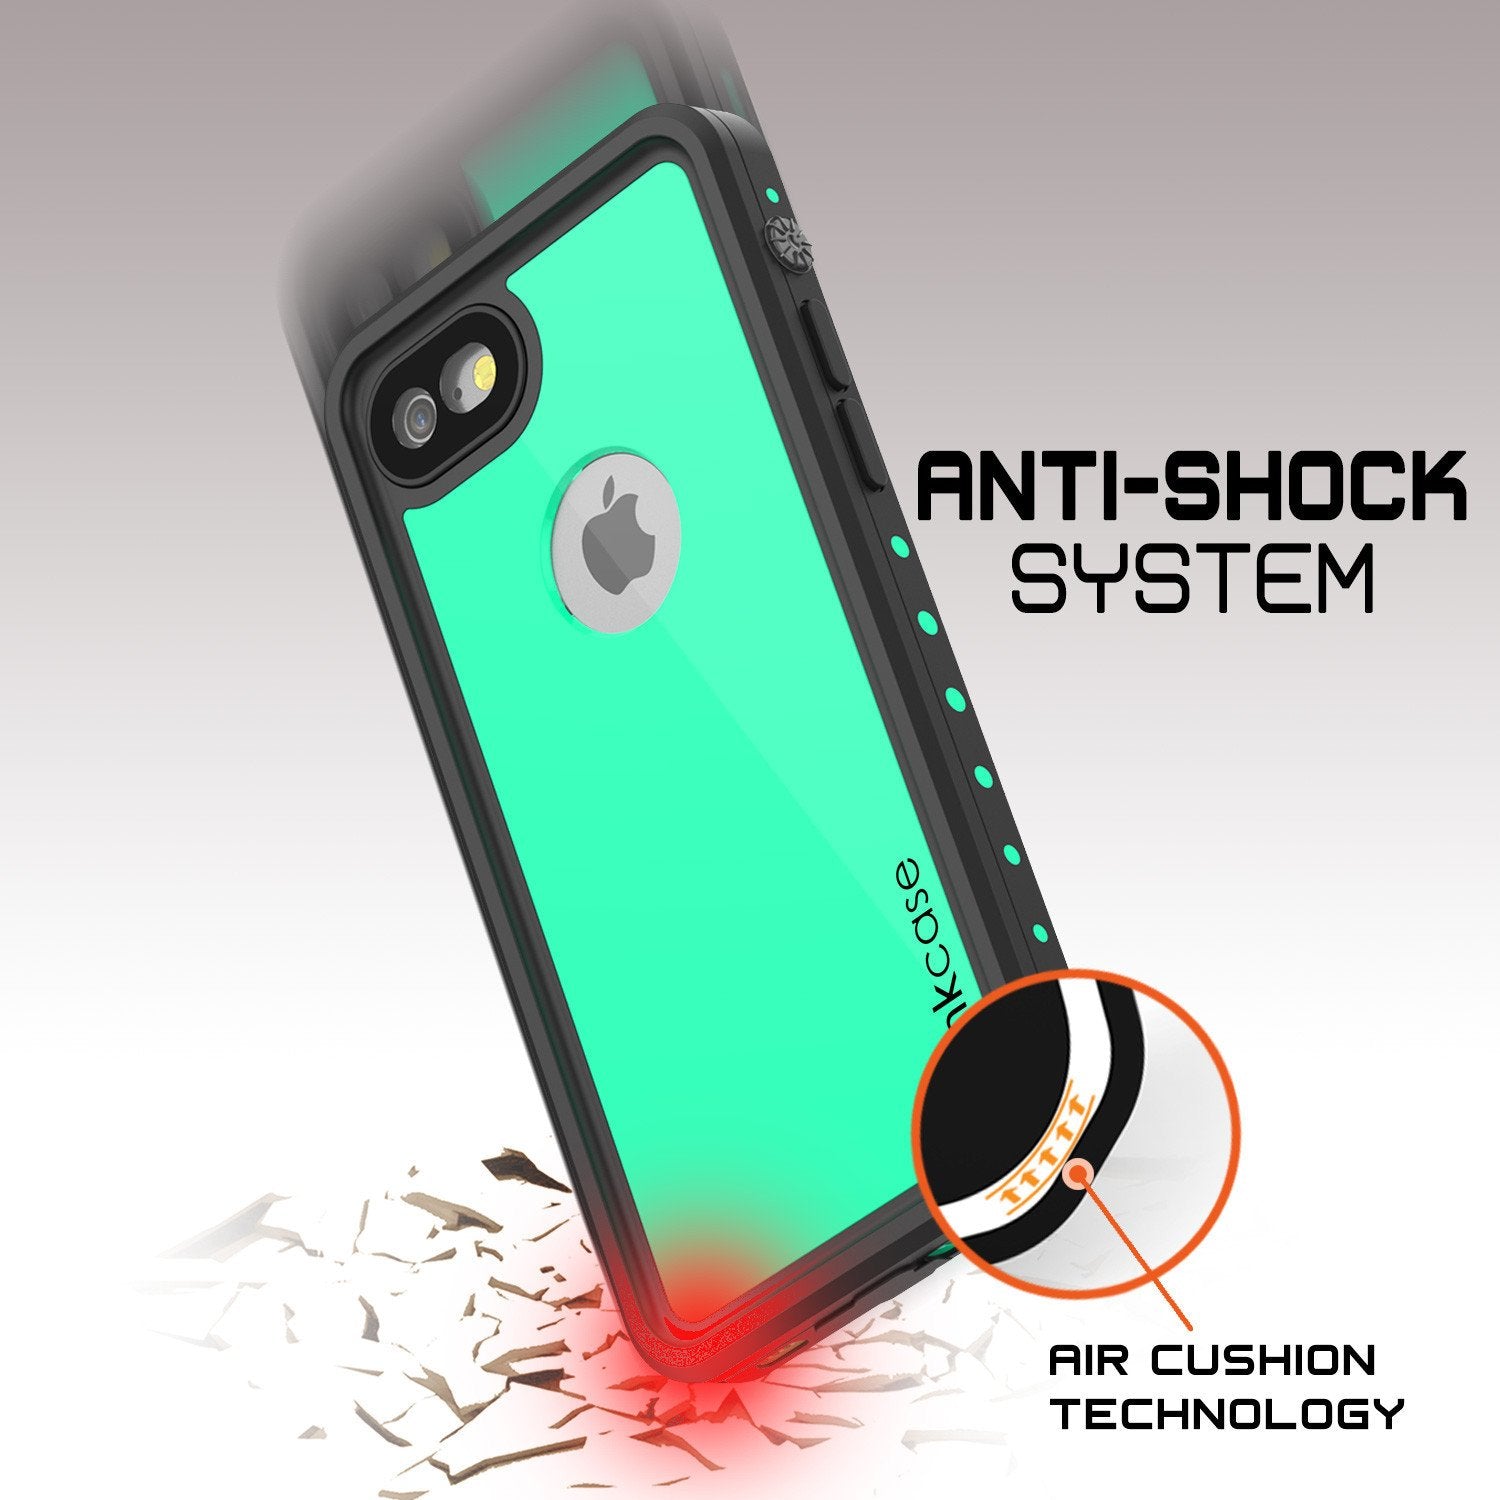 iPhone 7 Waterproof Case, Punkcase [Teal] [StudStar Series] [Slim Fit] [IP68 Certified] [Shockproof] [Dirtproof] [Snowproof] Armor Cover for Apple iPhone 7 & 7s